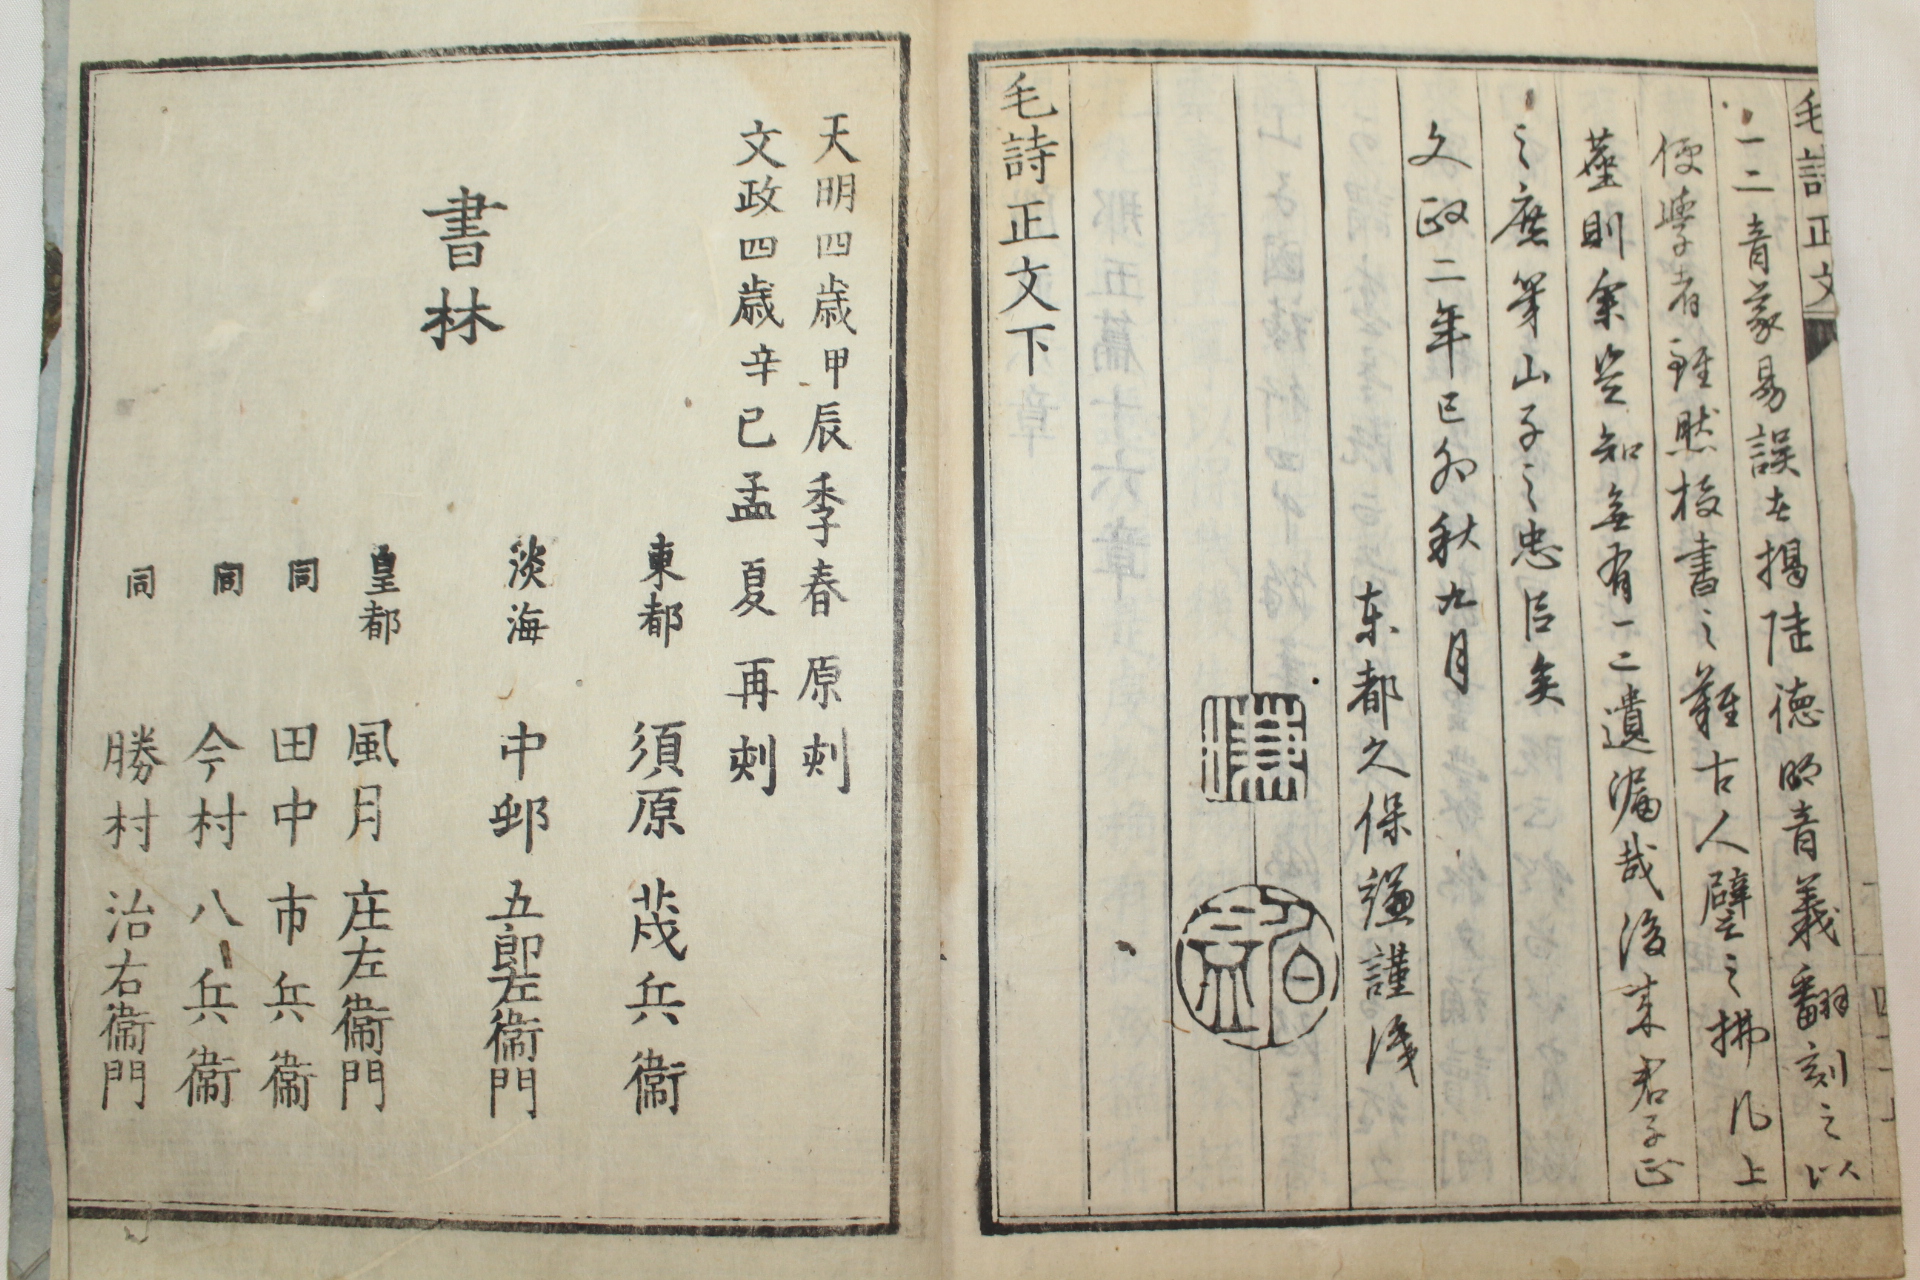 1821년(文政4年) 일본목판본 모시정문(毛詩正文) 하권 1책